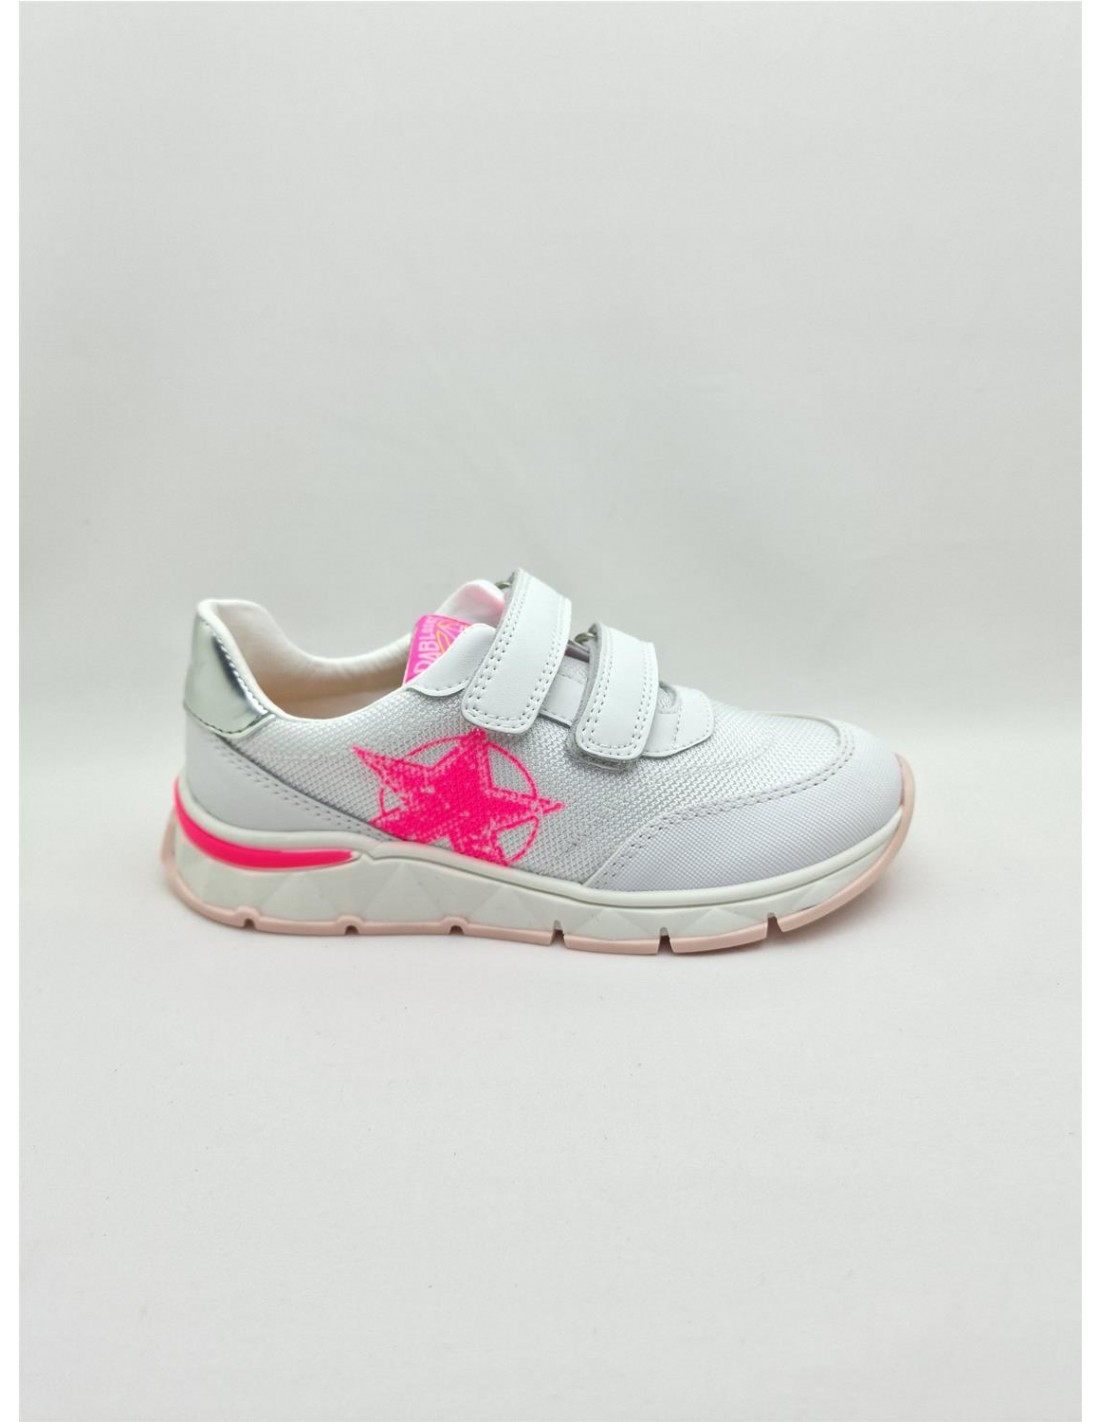 Кроссовки Pablosky для девочек, размер 29, белые с розовым принтом, 298707